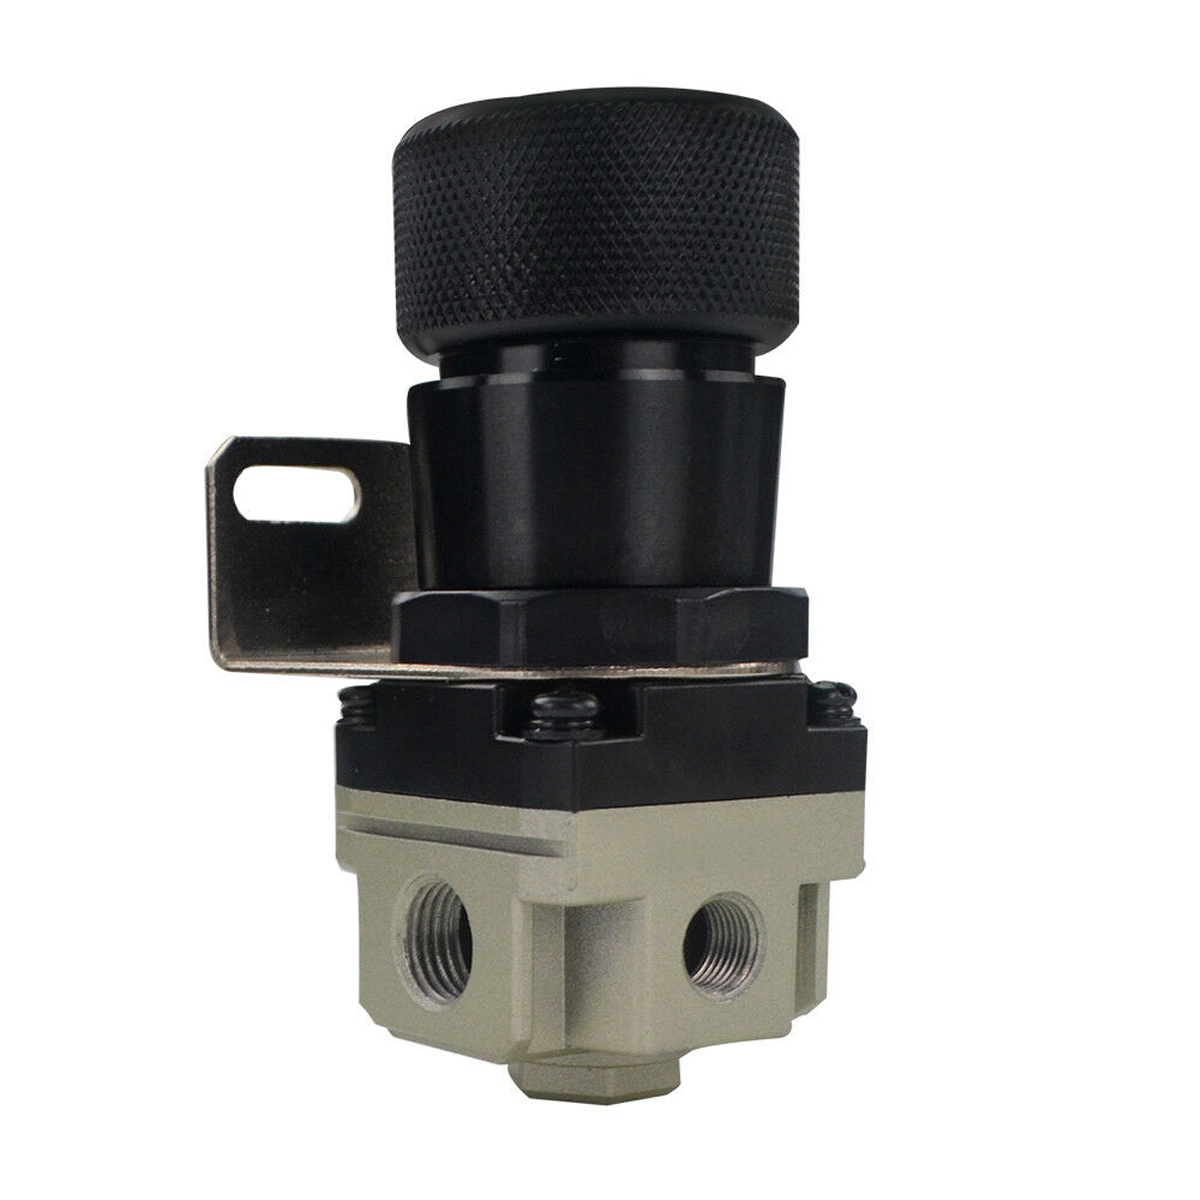 T2 Universal Adjustable Mbc Manual Voltage Gauge Turbo Booster Regulator Controller 1-150 Psi Black